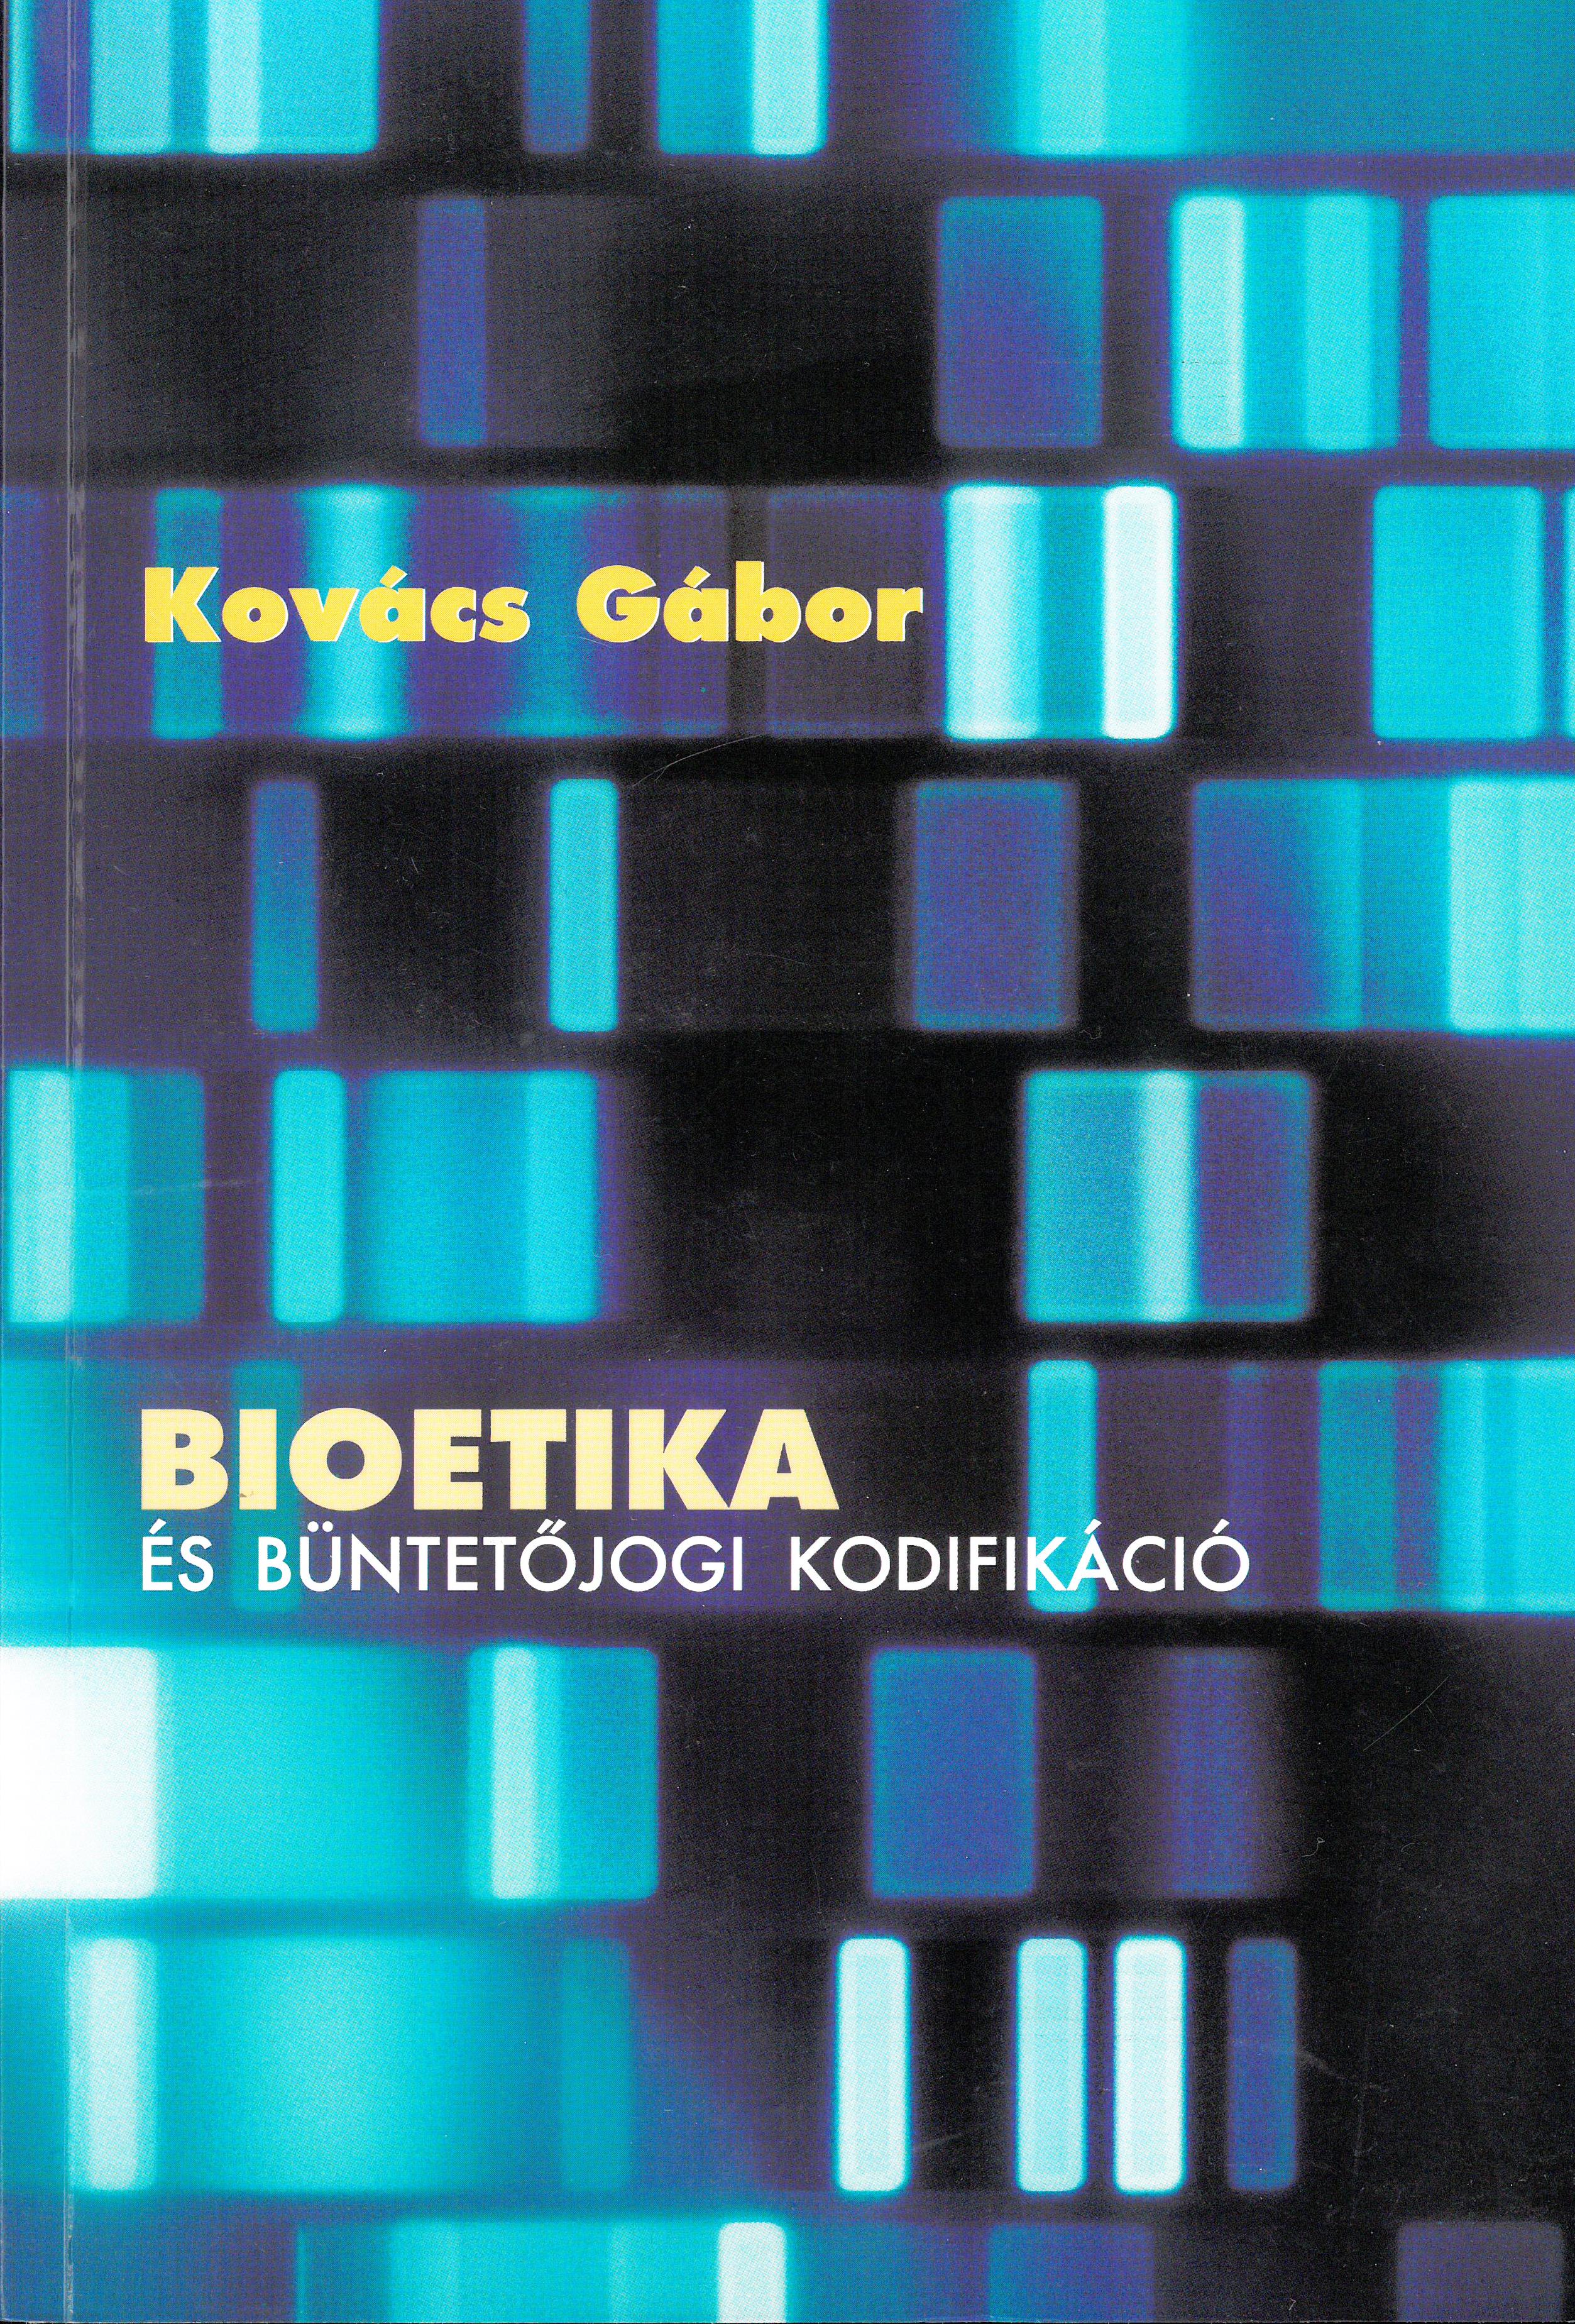 Kovács Gábor Bioetika +++. .jpg